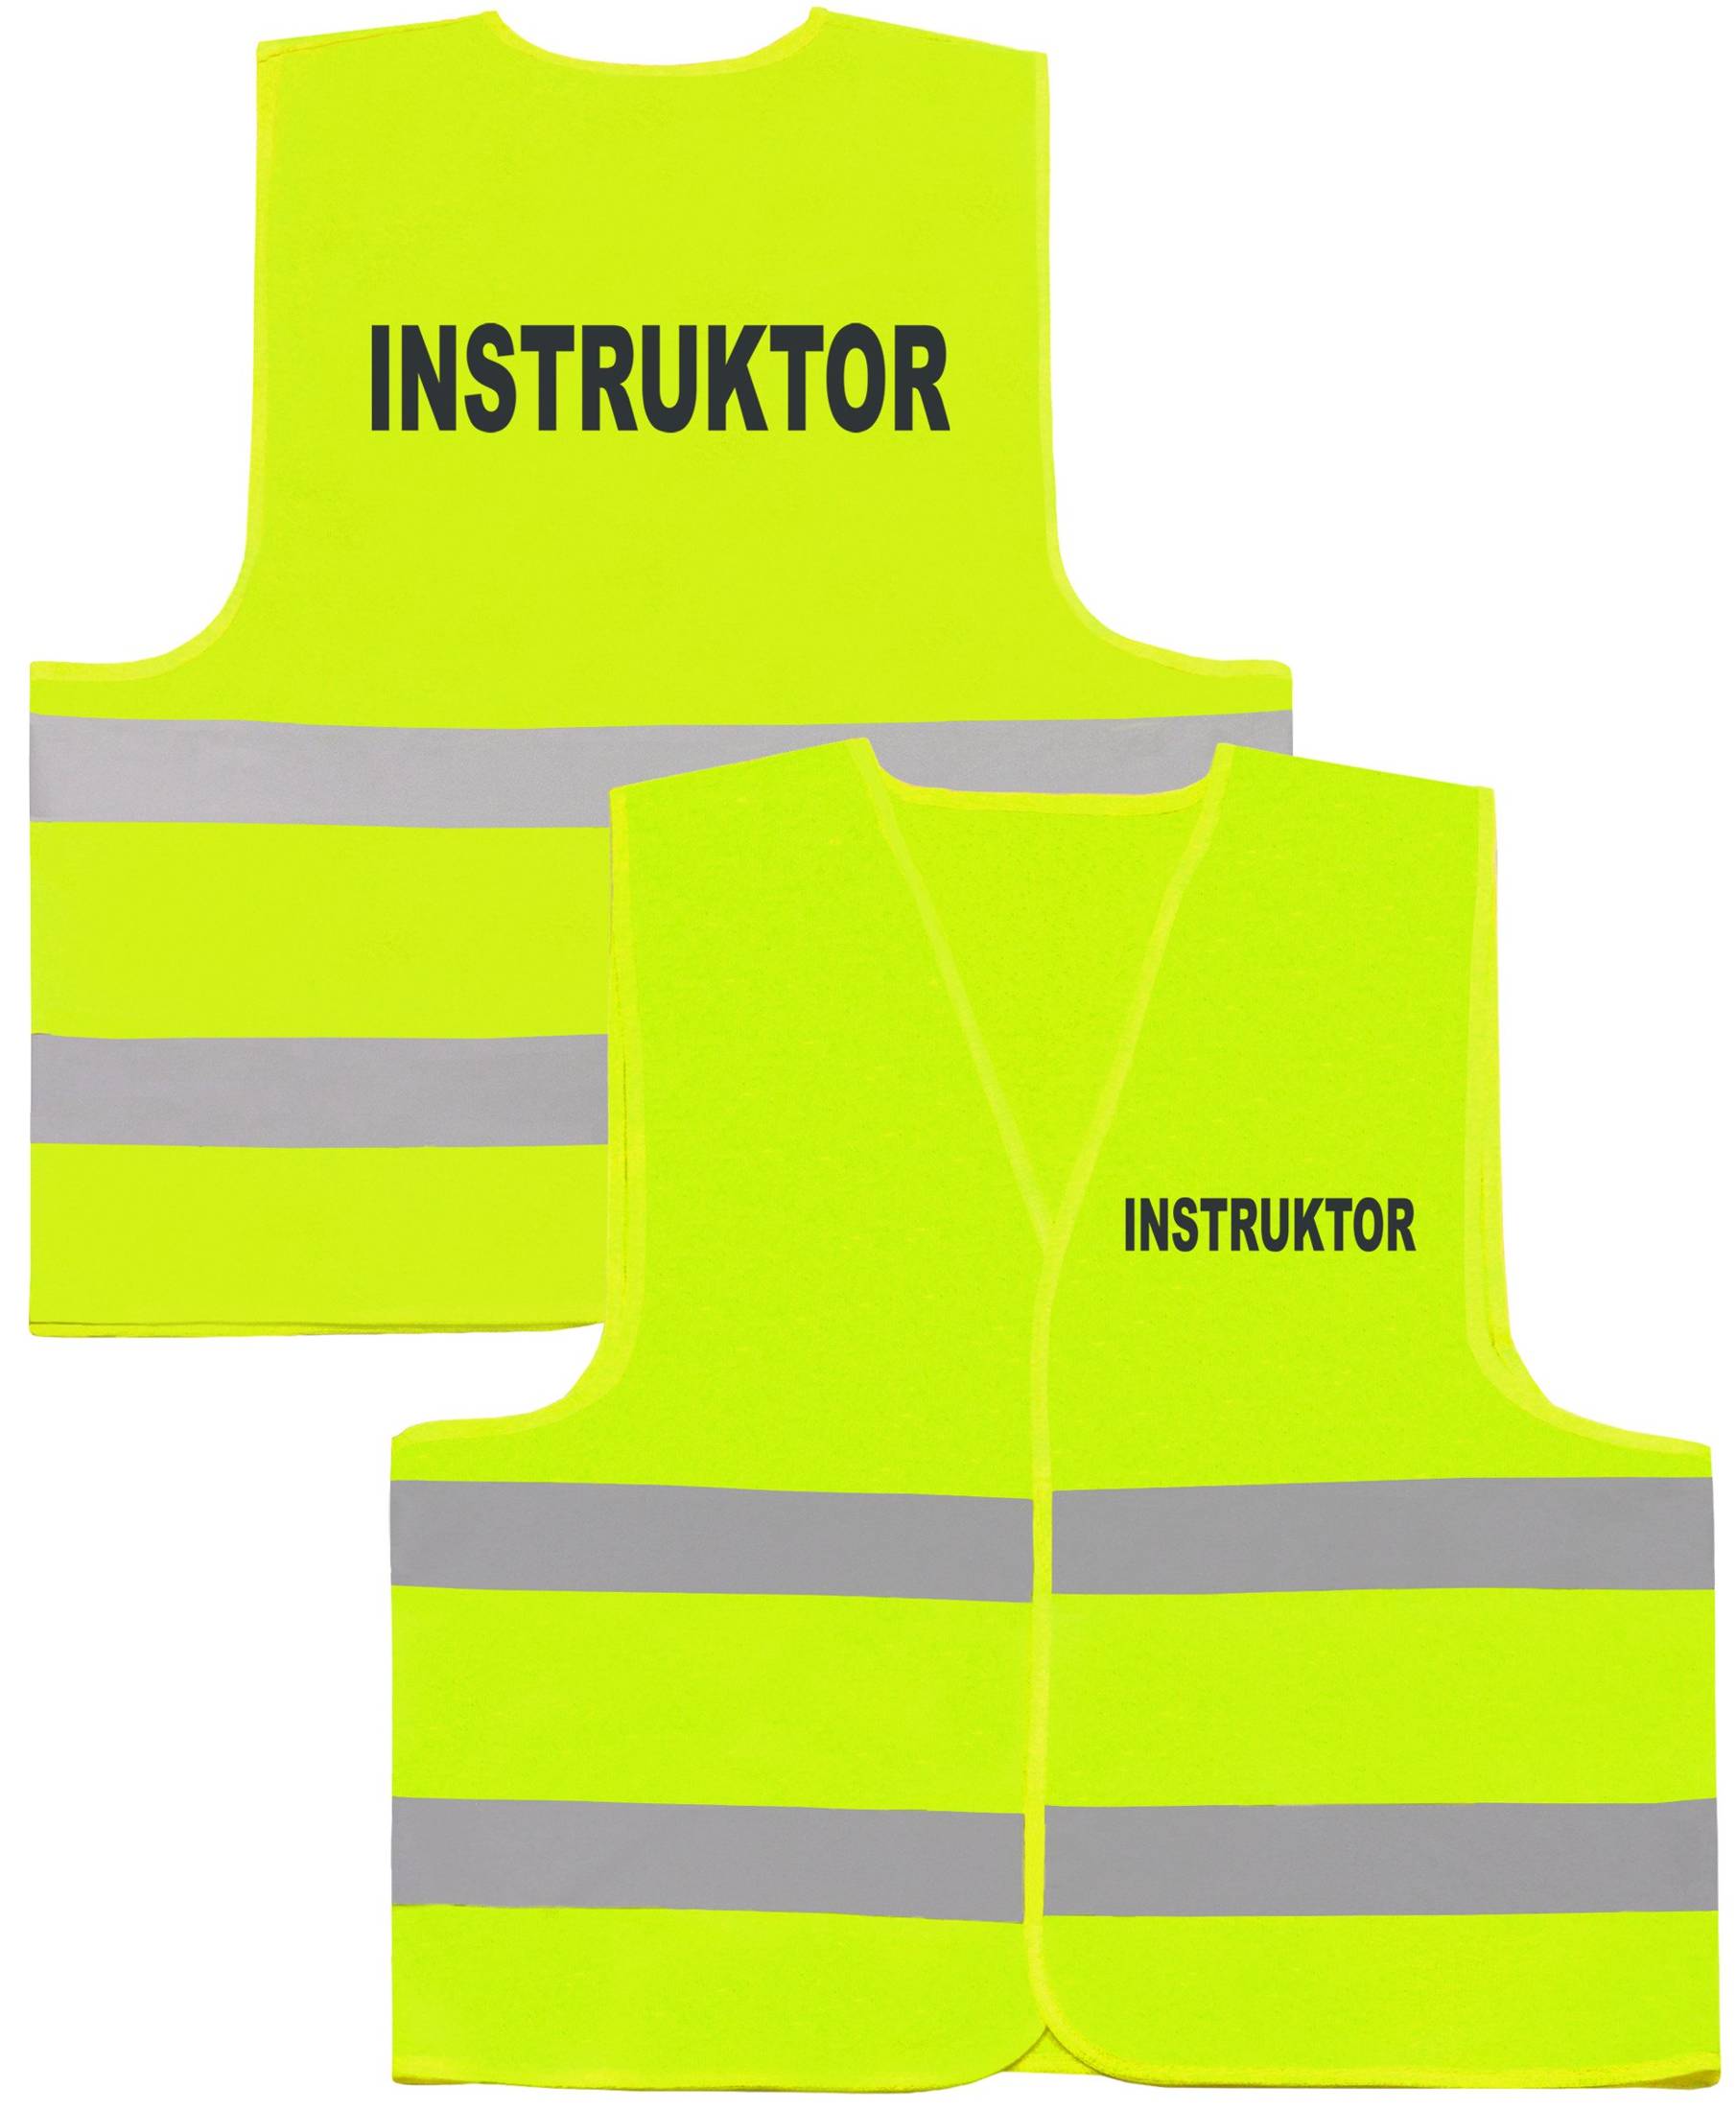 instruktor-kamizelka-odblaskowa-hvr-wear-pl